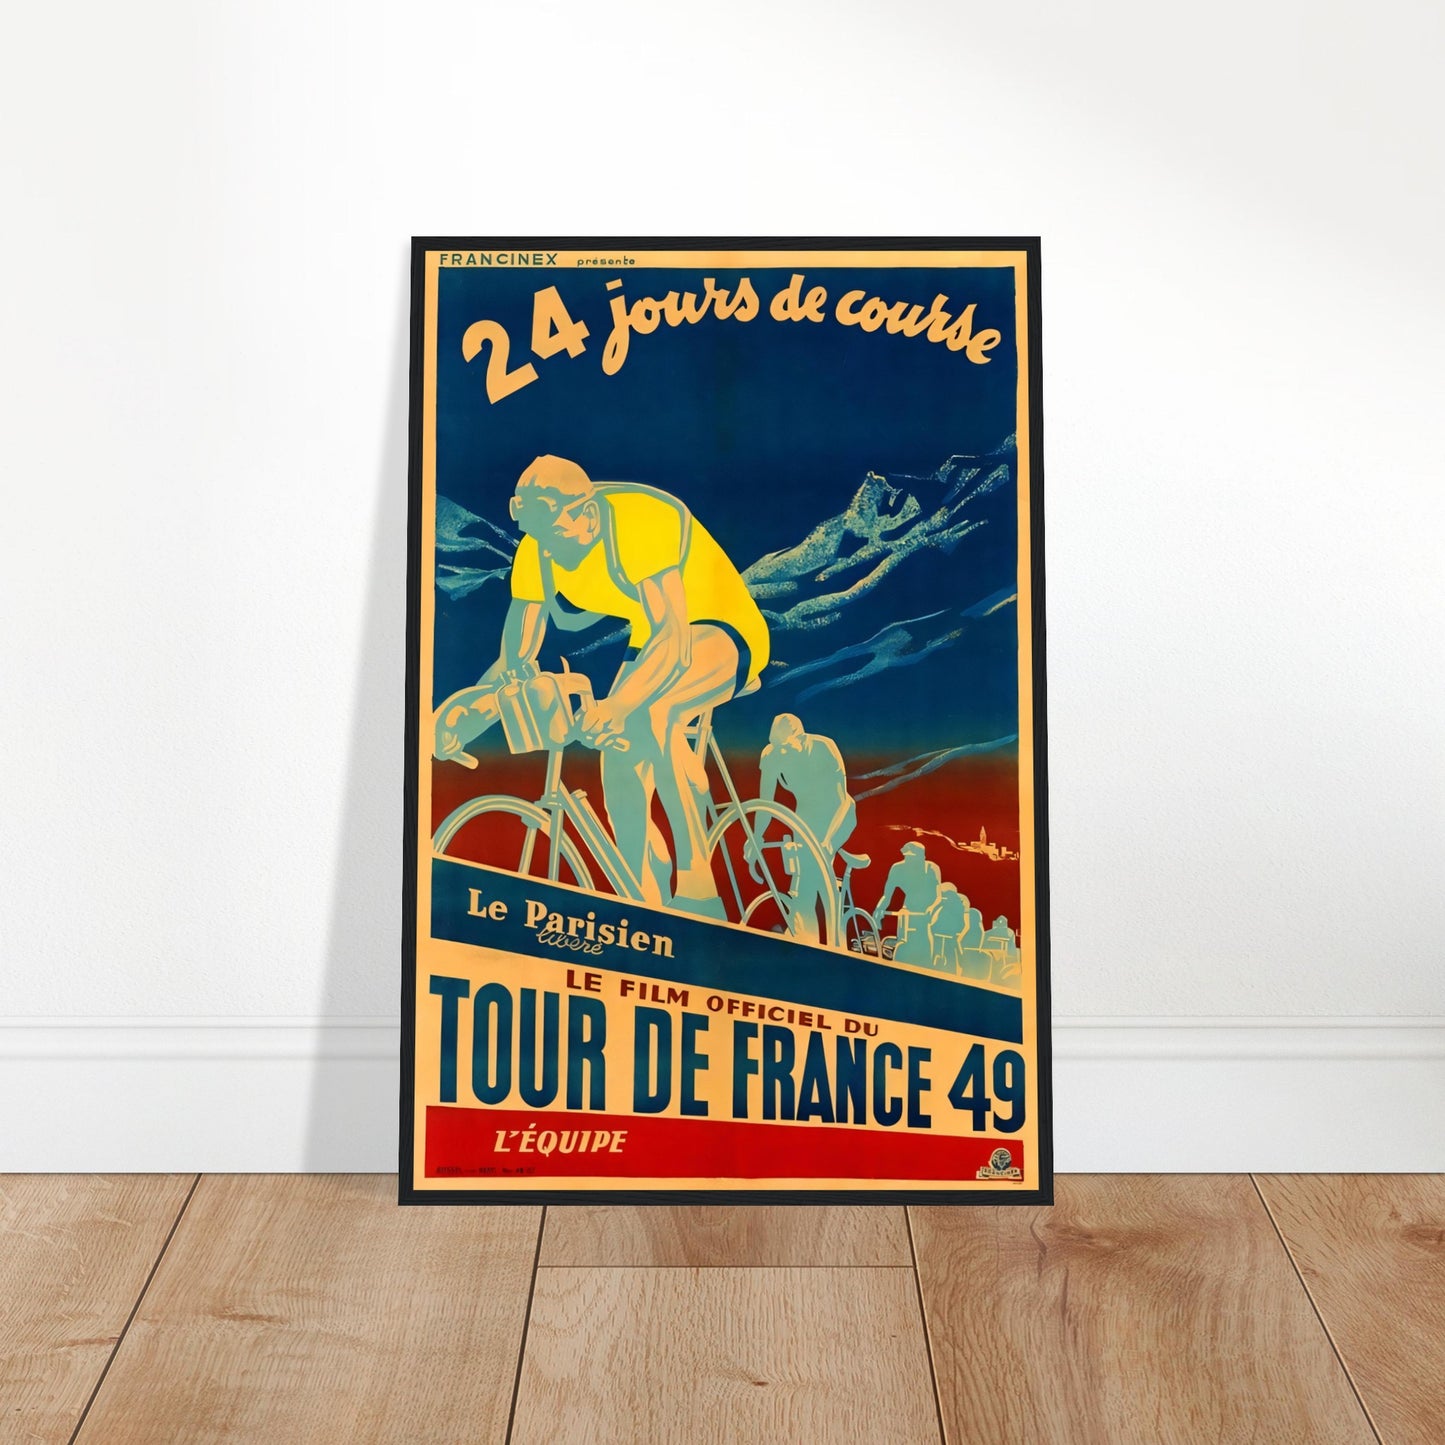 Tour De France, Vintage Poster Reprint on Premium Matte Paper